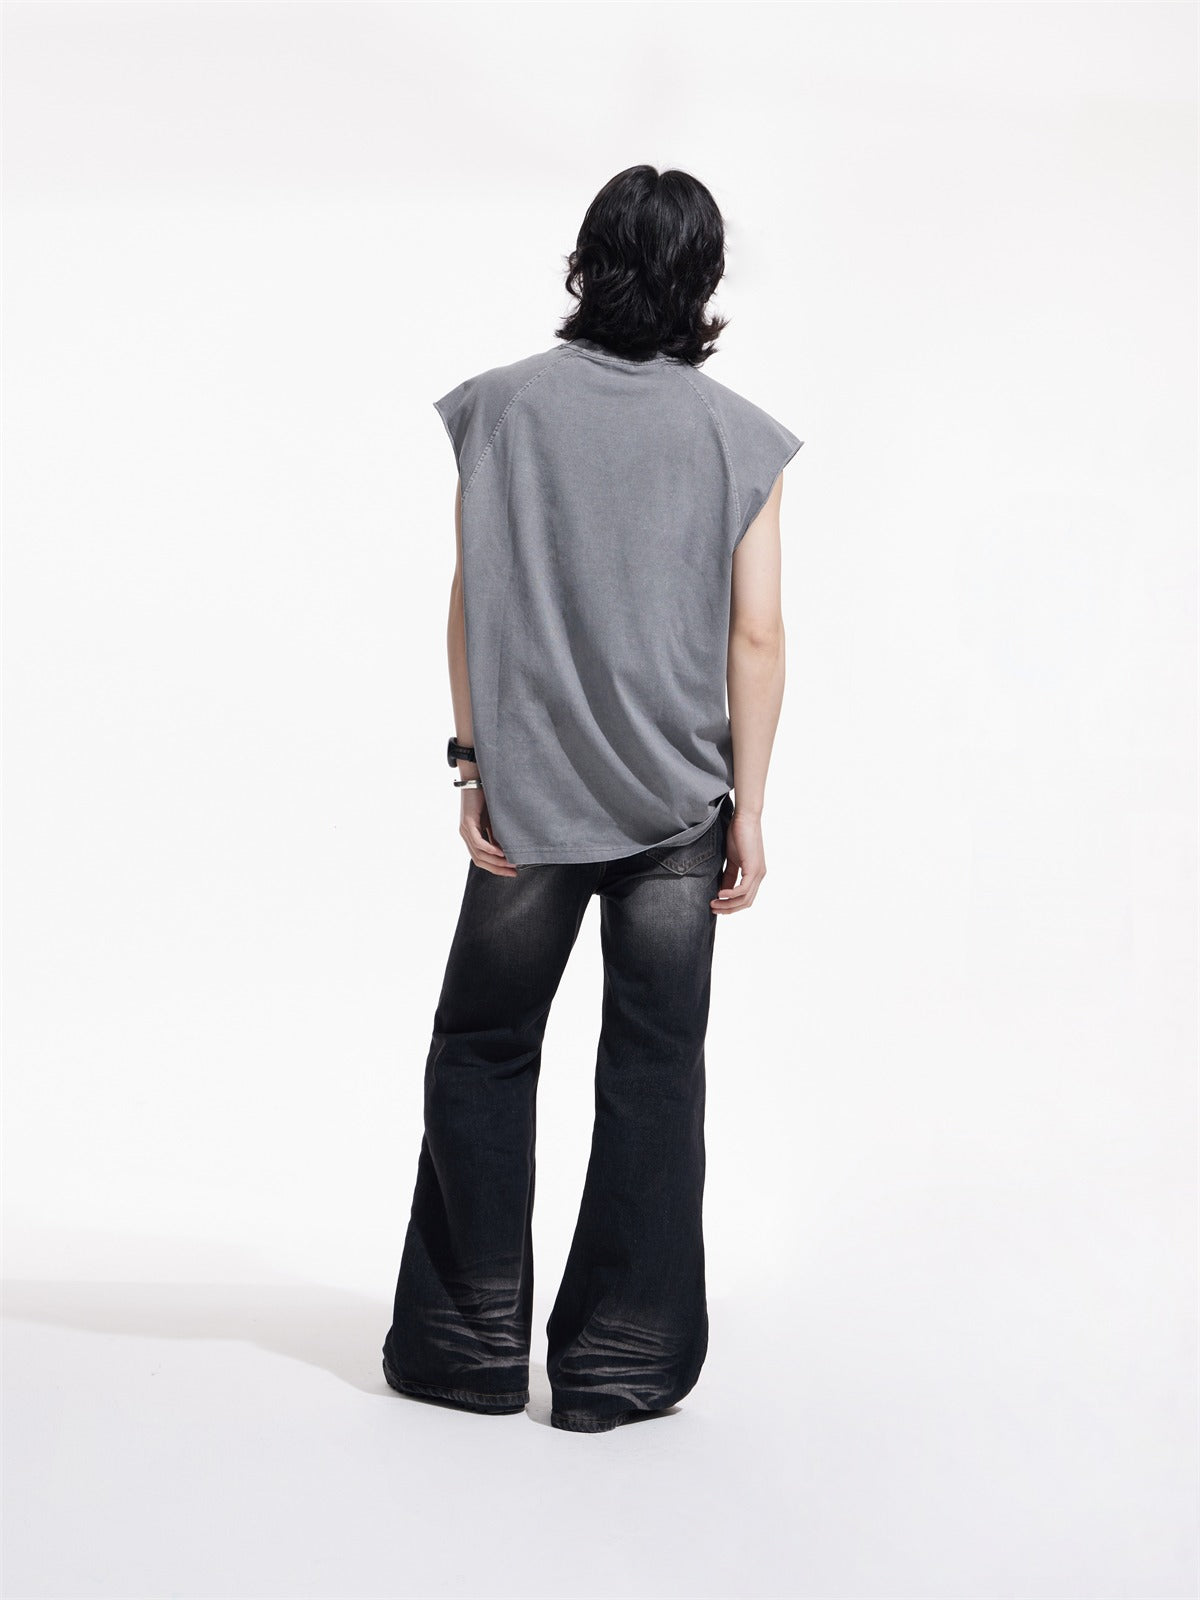 Leicht ausgestellte Jeanshosen schlankern